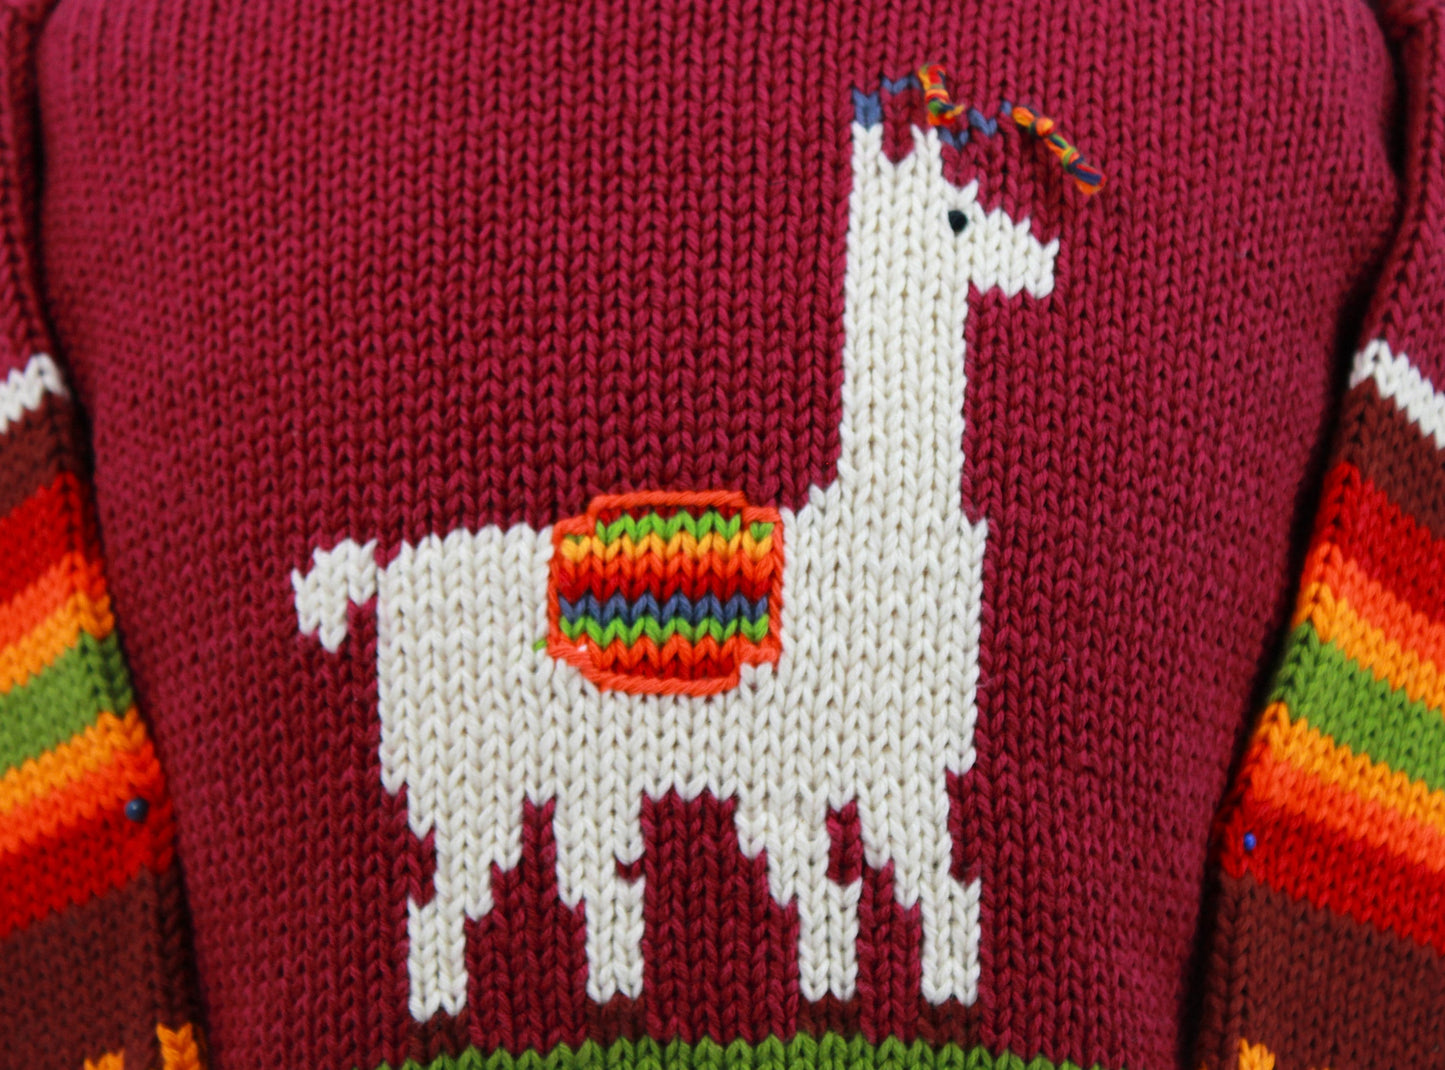 Kinderpullover 110/115 100% Baumwolle Strickpullover warm Wollpullover Winterpullover Geburtstag handgemacht Peru Ostergeschenk Kind